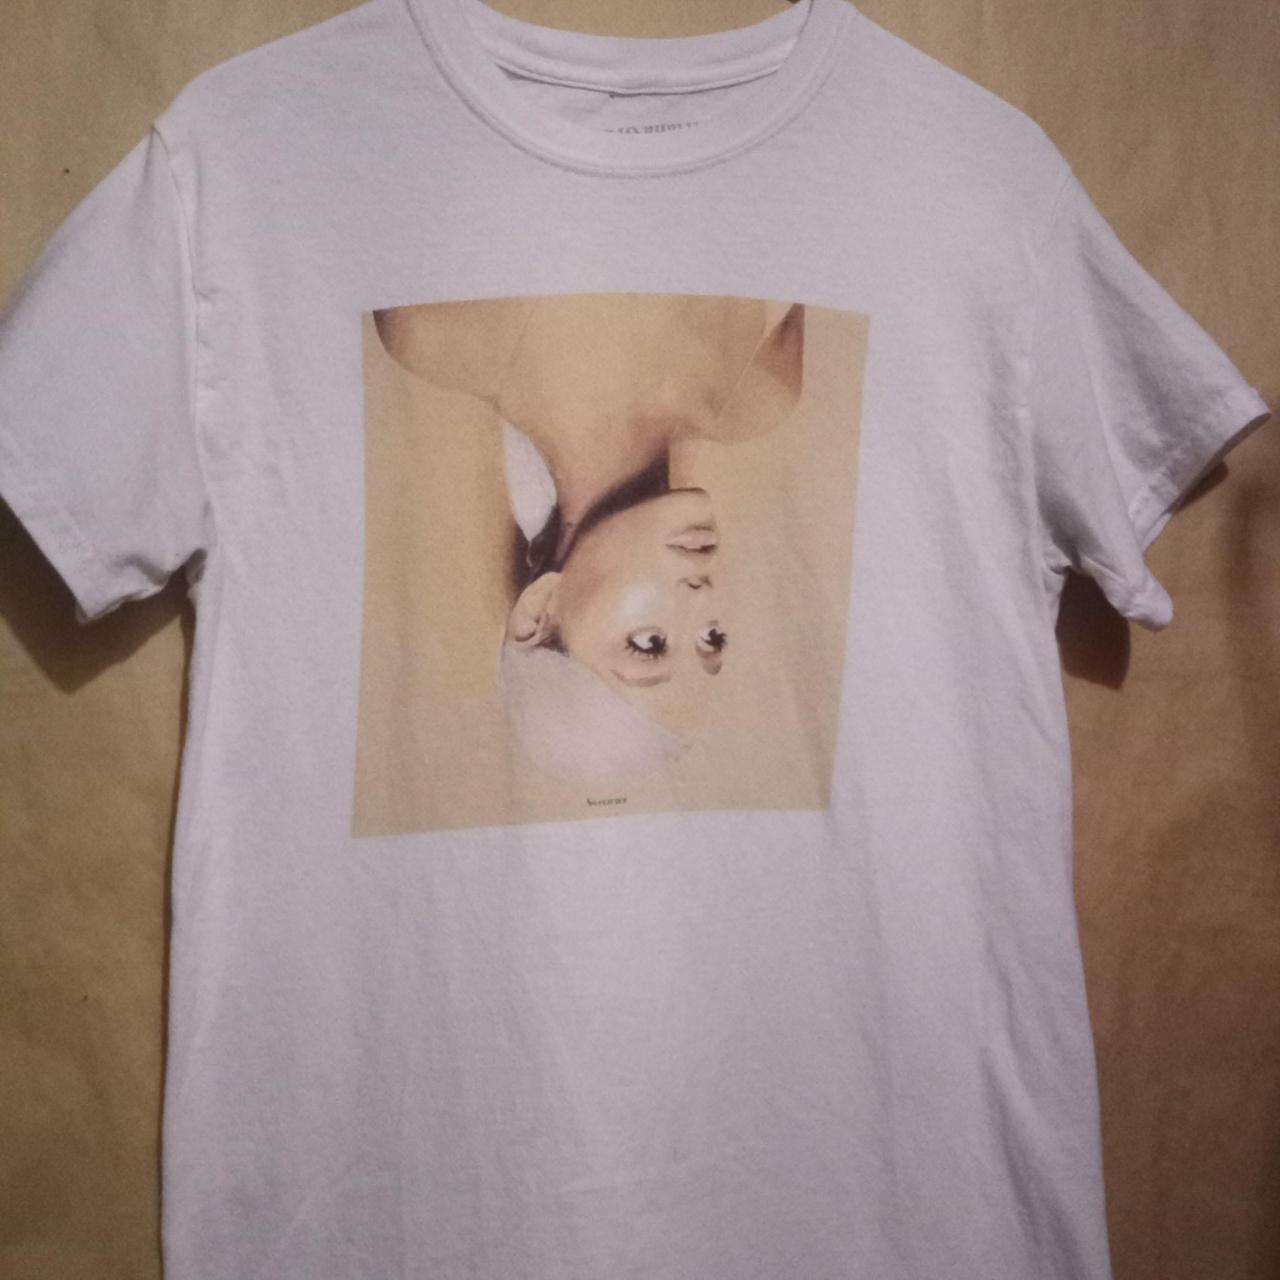 Ariana Grande Unisex Sweetener T-Shirt